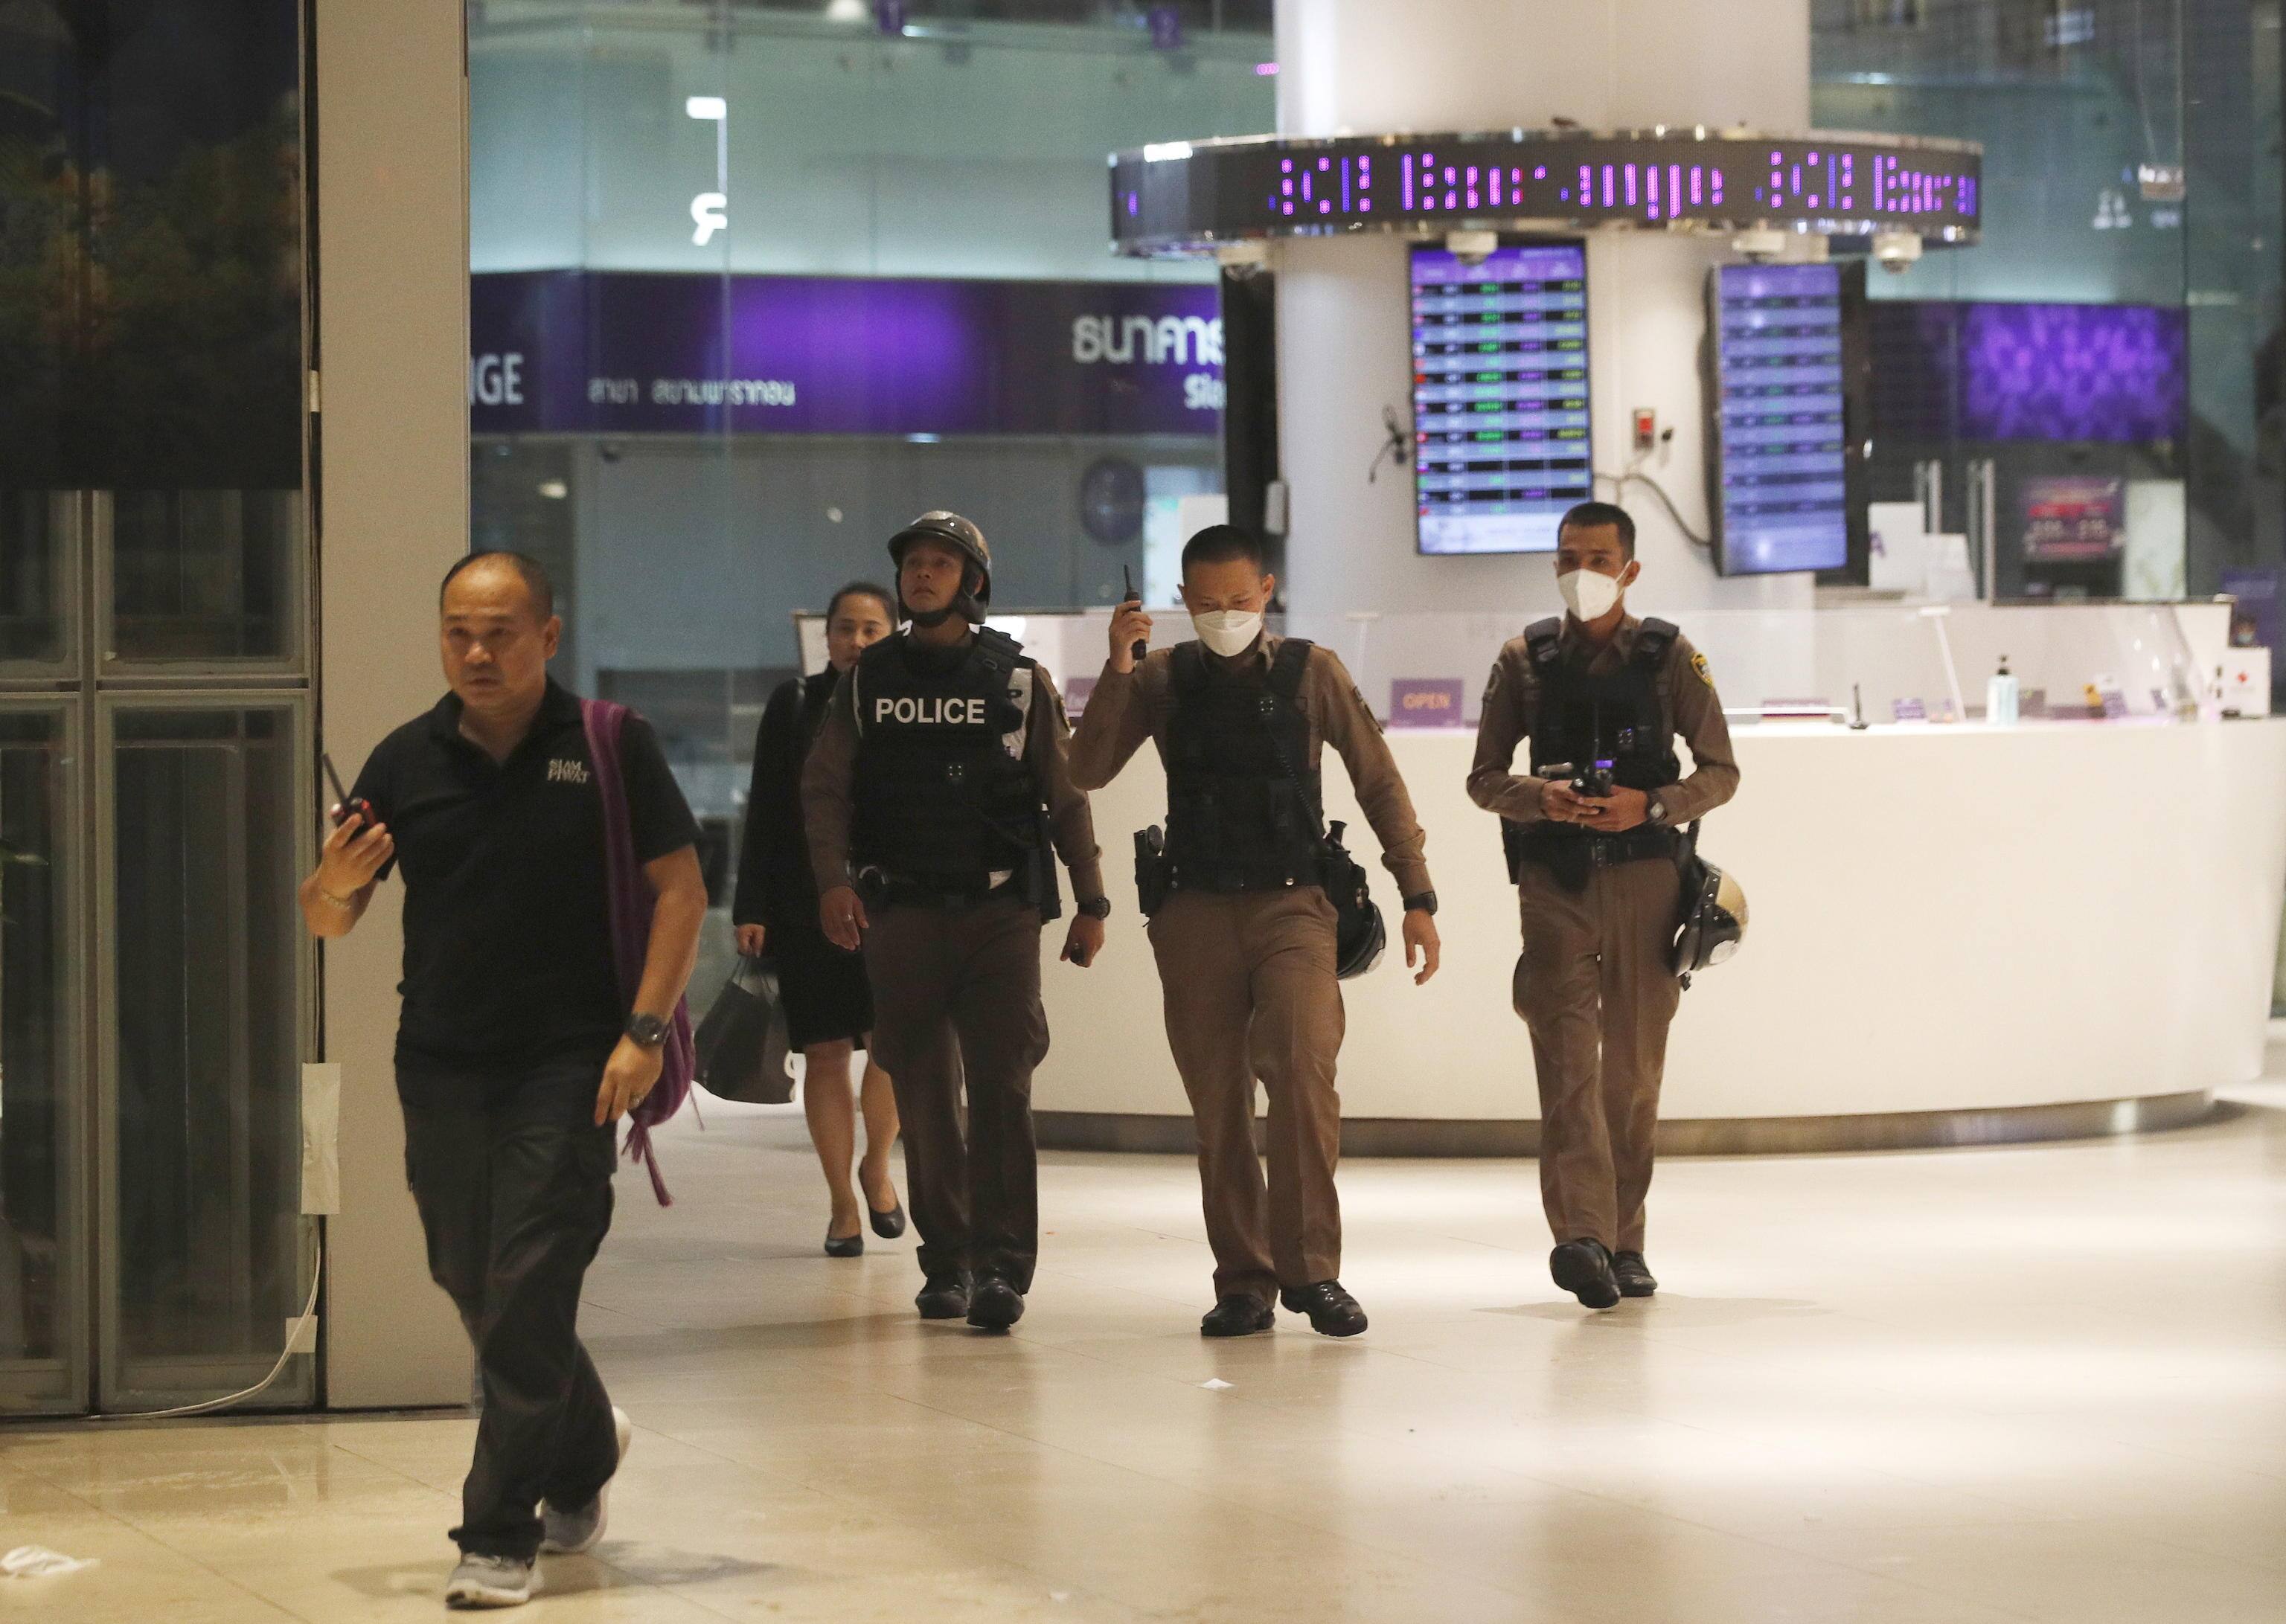 Poliziotti all'interno del centro commerciale